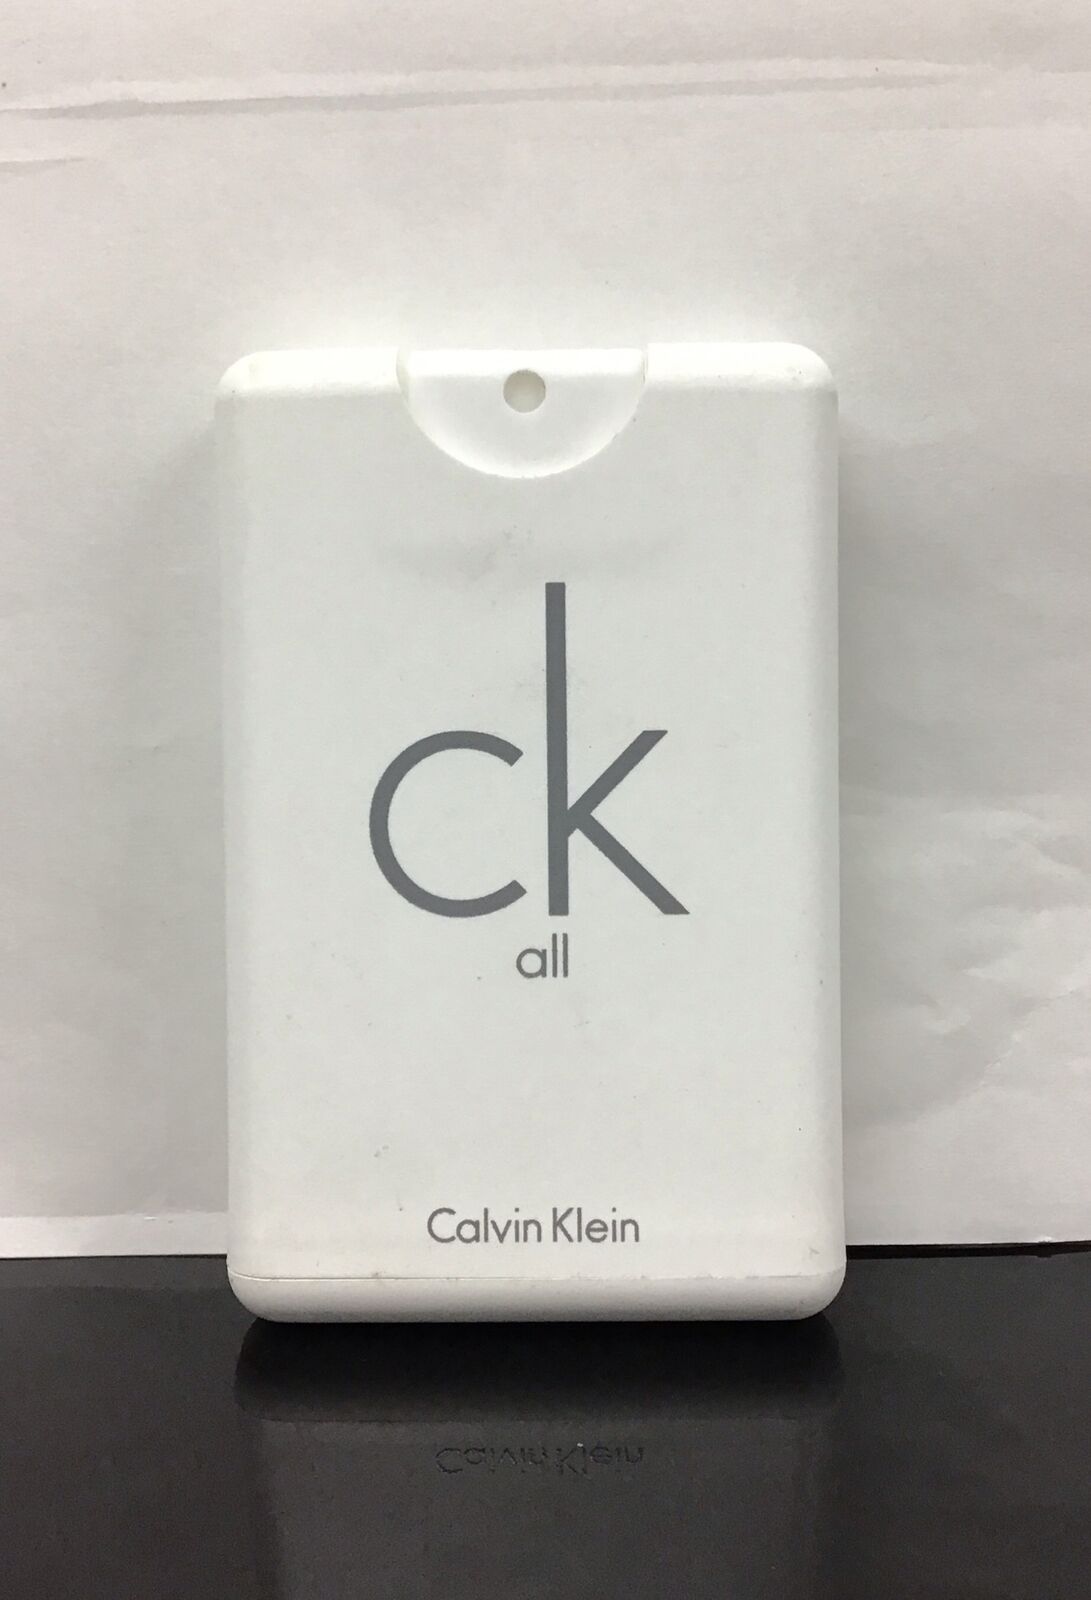 Calvin Klein CK All Eau De Toilette Travel Spray 0.68 Fl Oz, Rare, No Box.